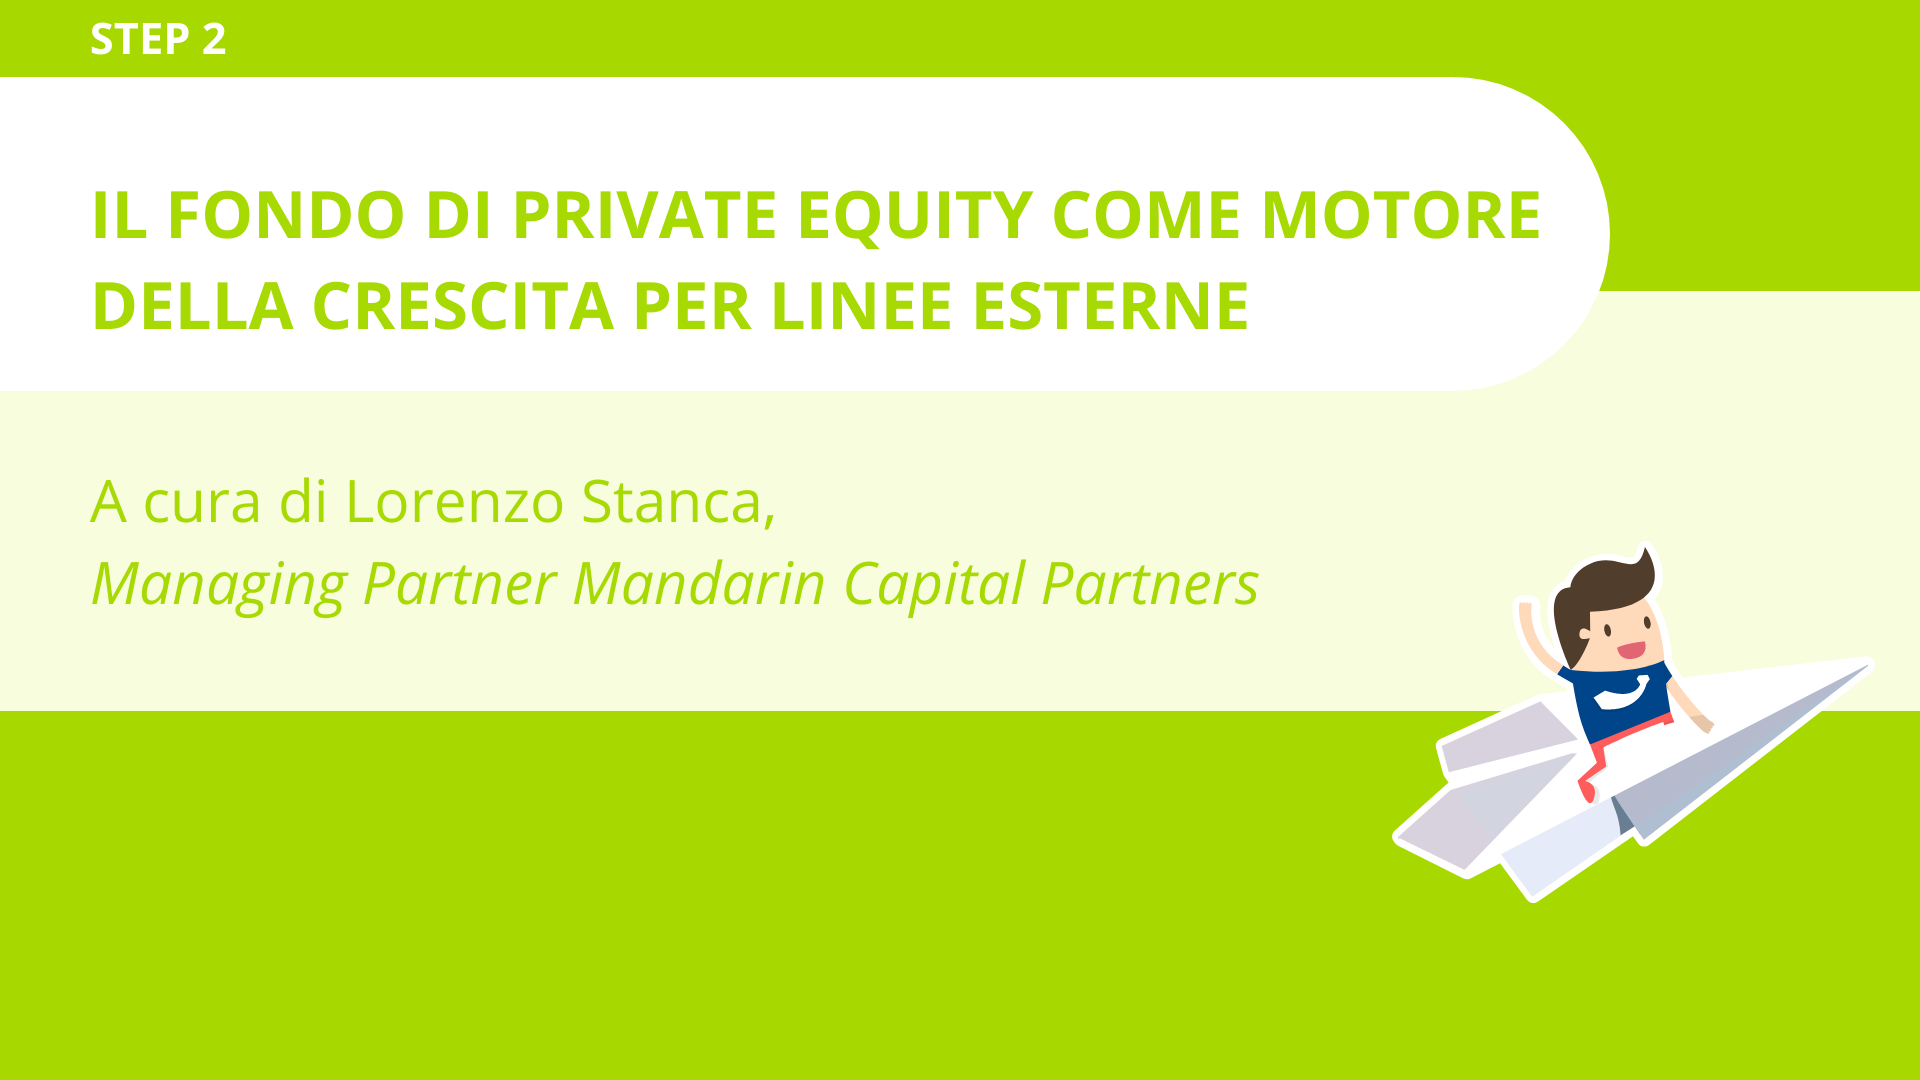 Il fondo di private equity come motore della crescita per linee esterne<br>Lorenzo Stanca - Mandarin Capital Partners 